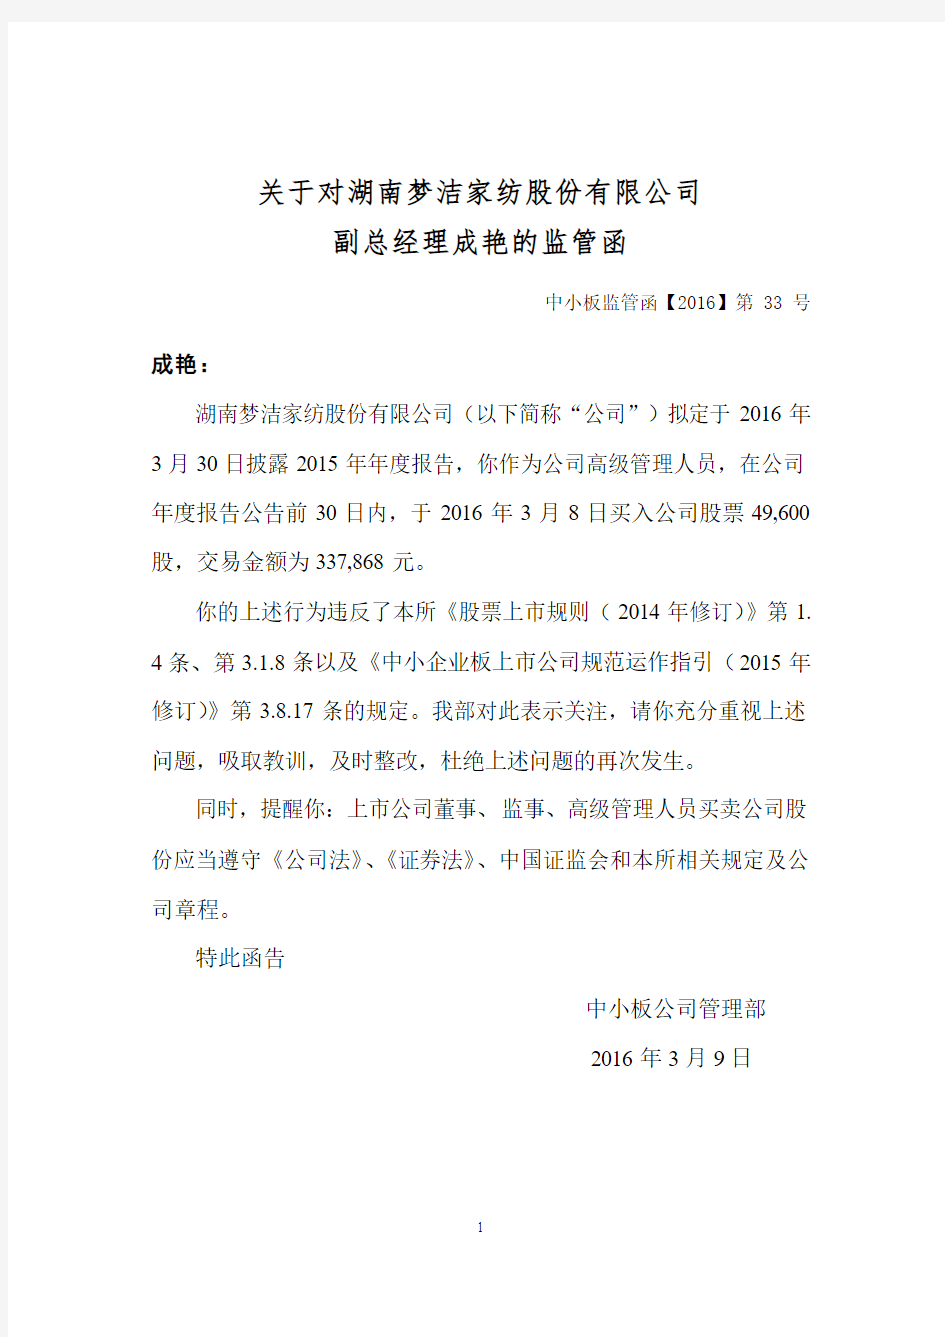 关于对湖南梦洁家纺股份有限公司 副总经理成艳的监管函